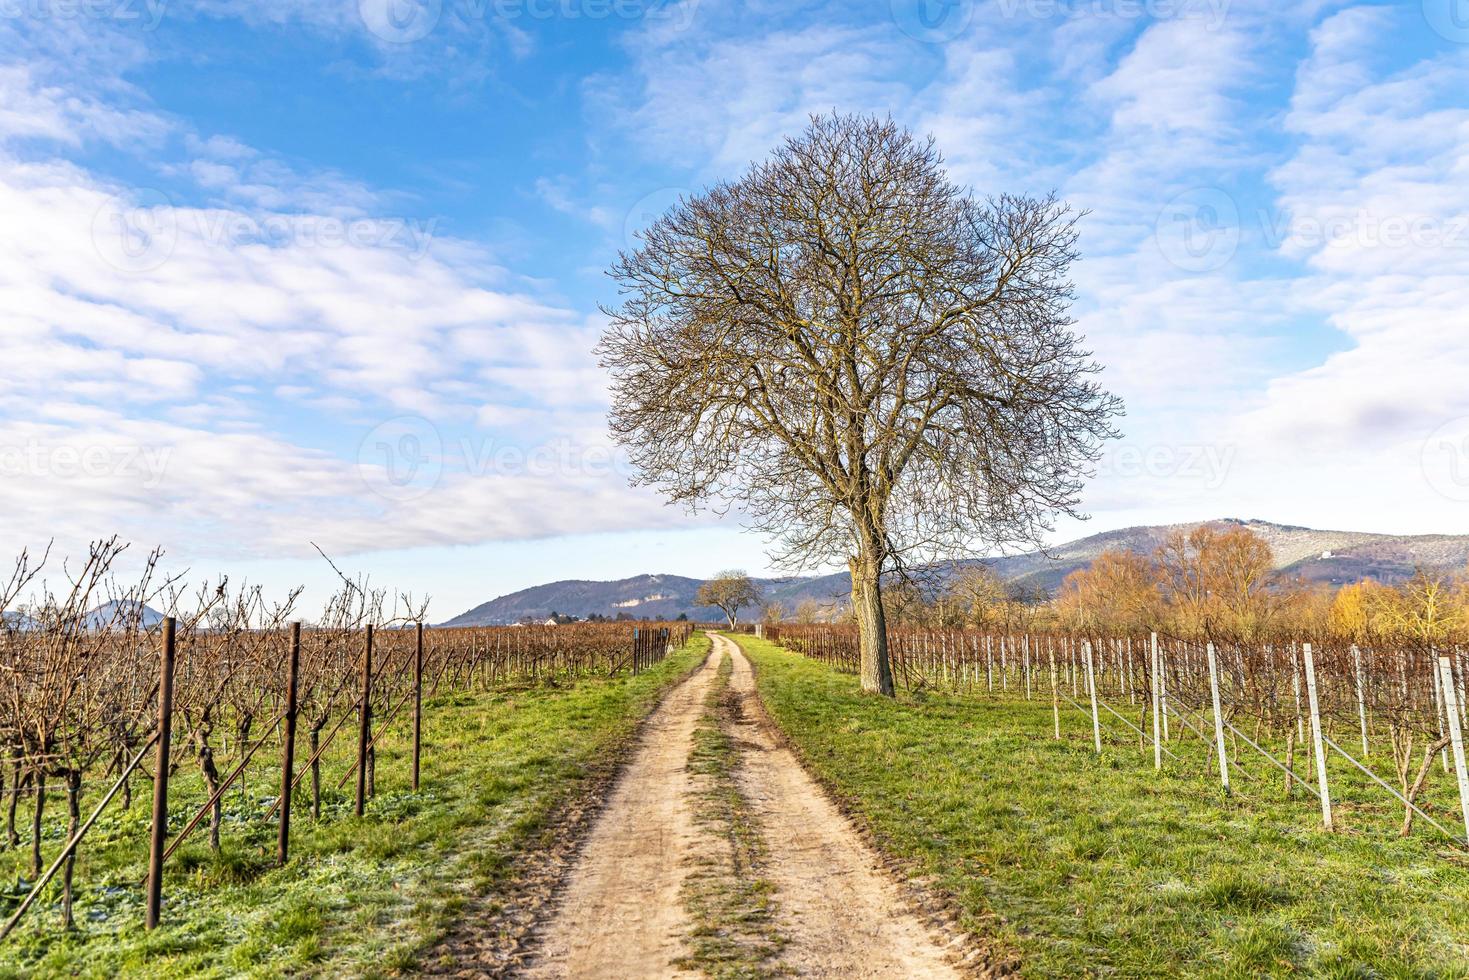 kale walnoot staat op een pad tussen wijnstokken in de winter tegen een blauwe bewolkte hemel foto